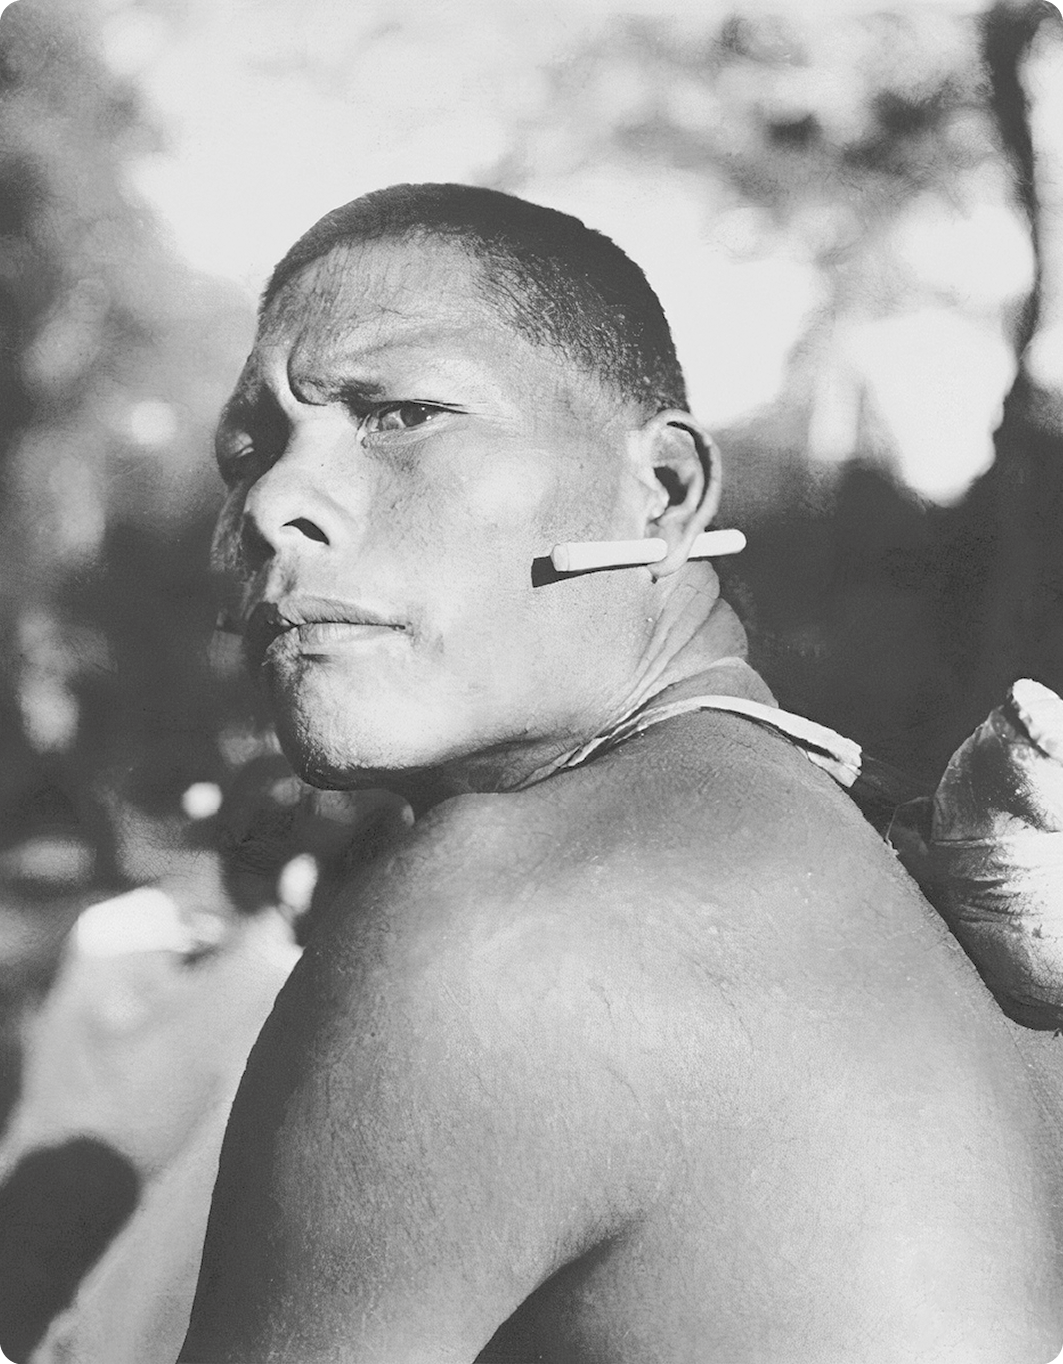 Fotografia em preto e branco. Destacando o busto de um homem indígena com um alargador na orelha.